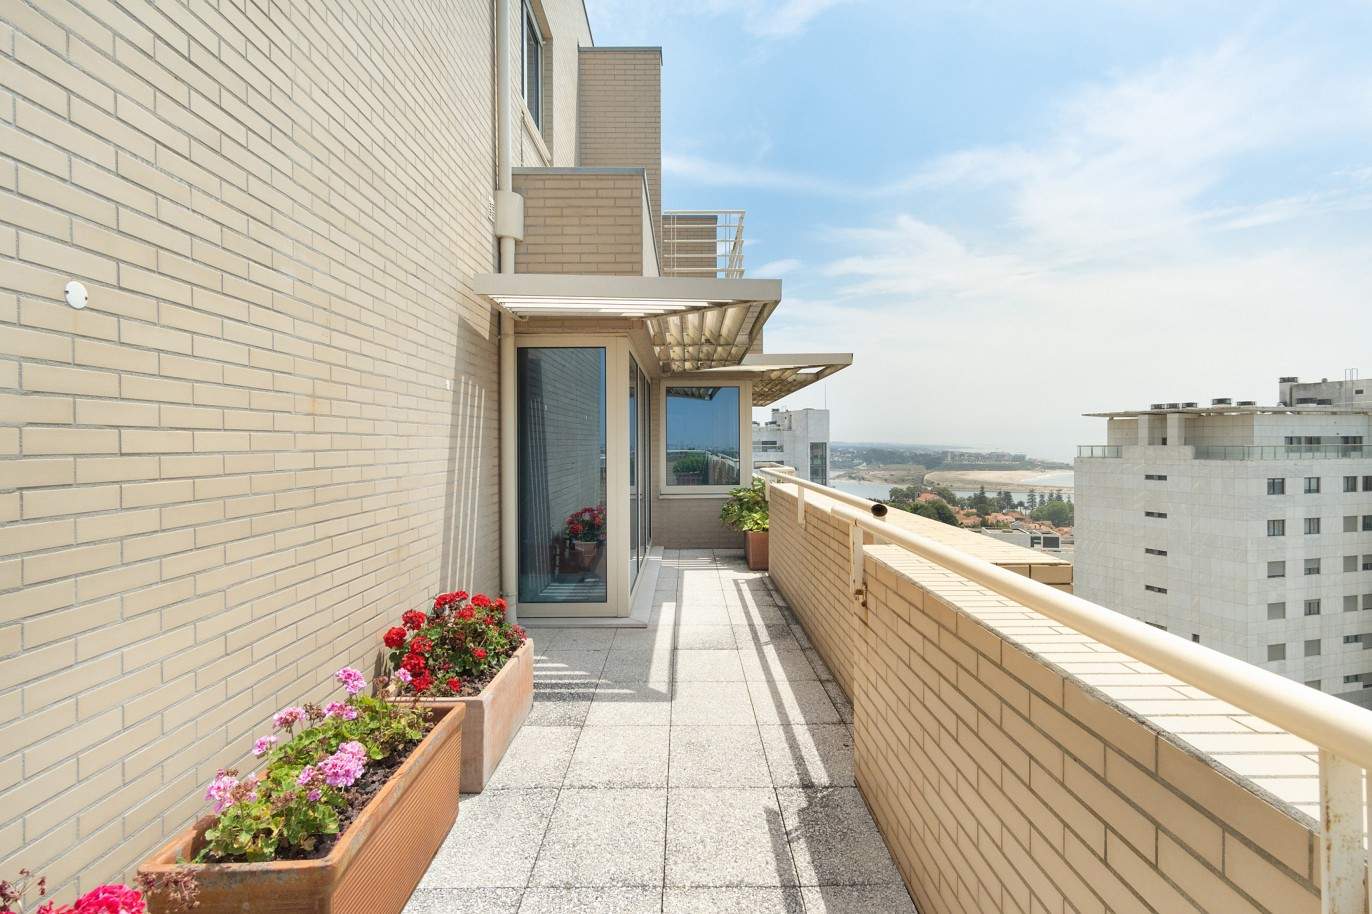 5 bedroom duplex flat with sea views, for sale, Pinhais da Foz, Porto, Portugal_203359